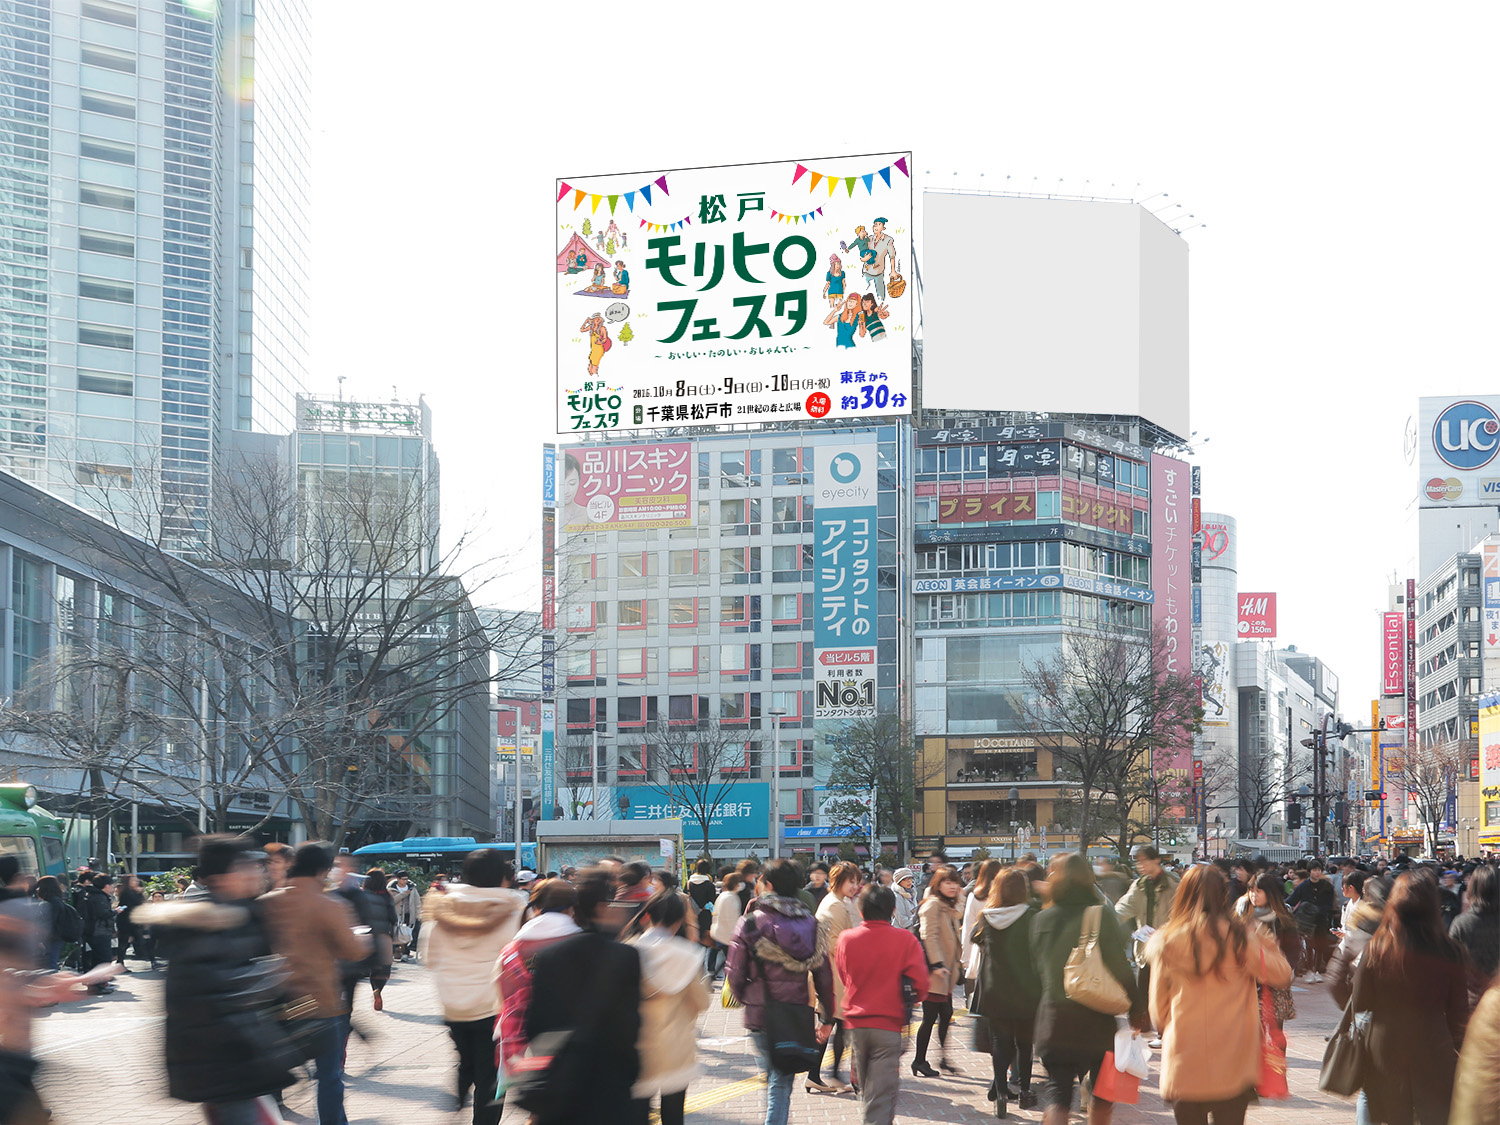 渋谷駅前 日本最大級の街頭ビジョンで松戸市のcmを放映 松戸モリヒロフェスタをpr 松戸市役所のプレスリリース